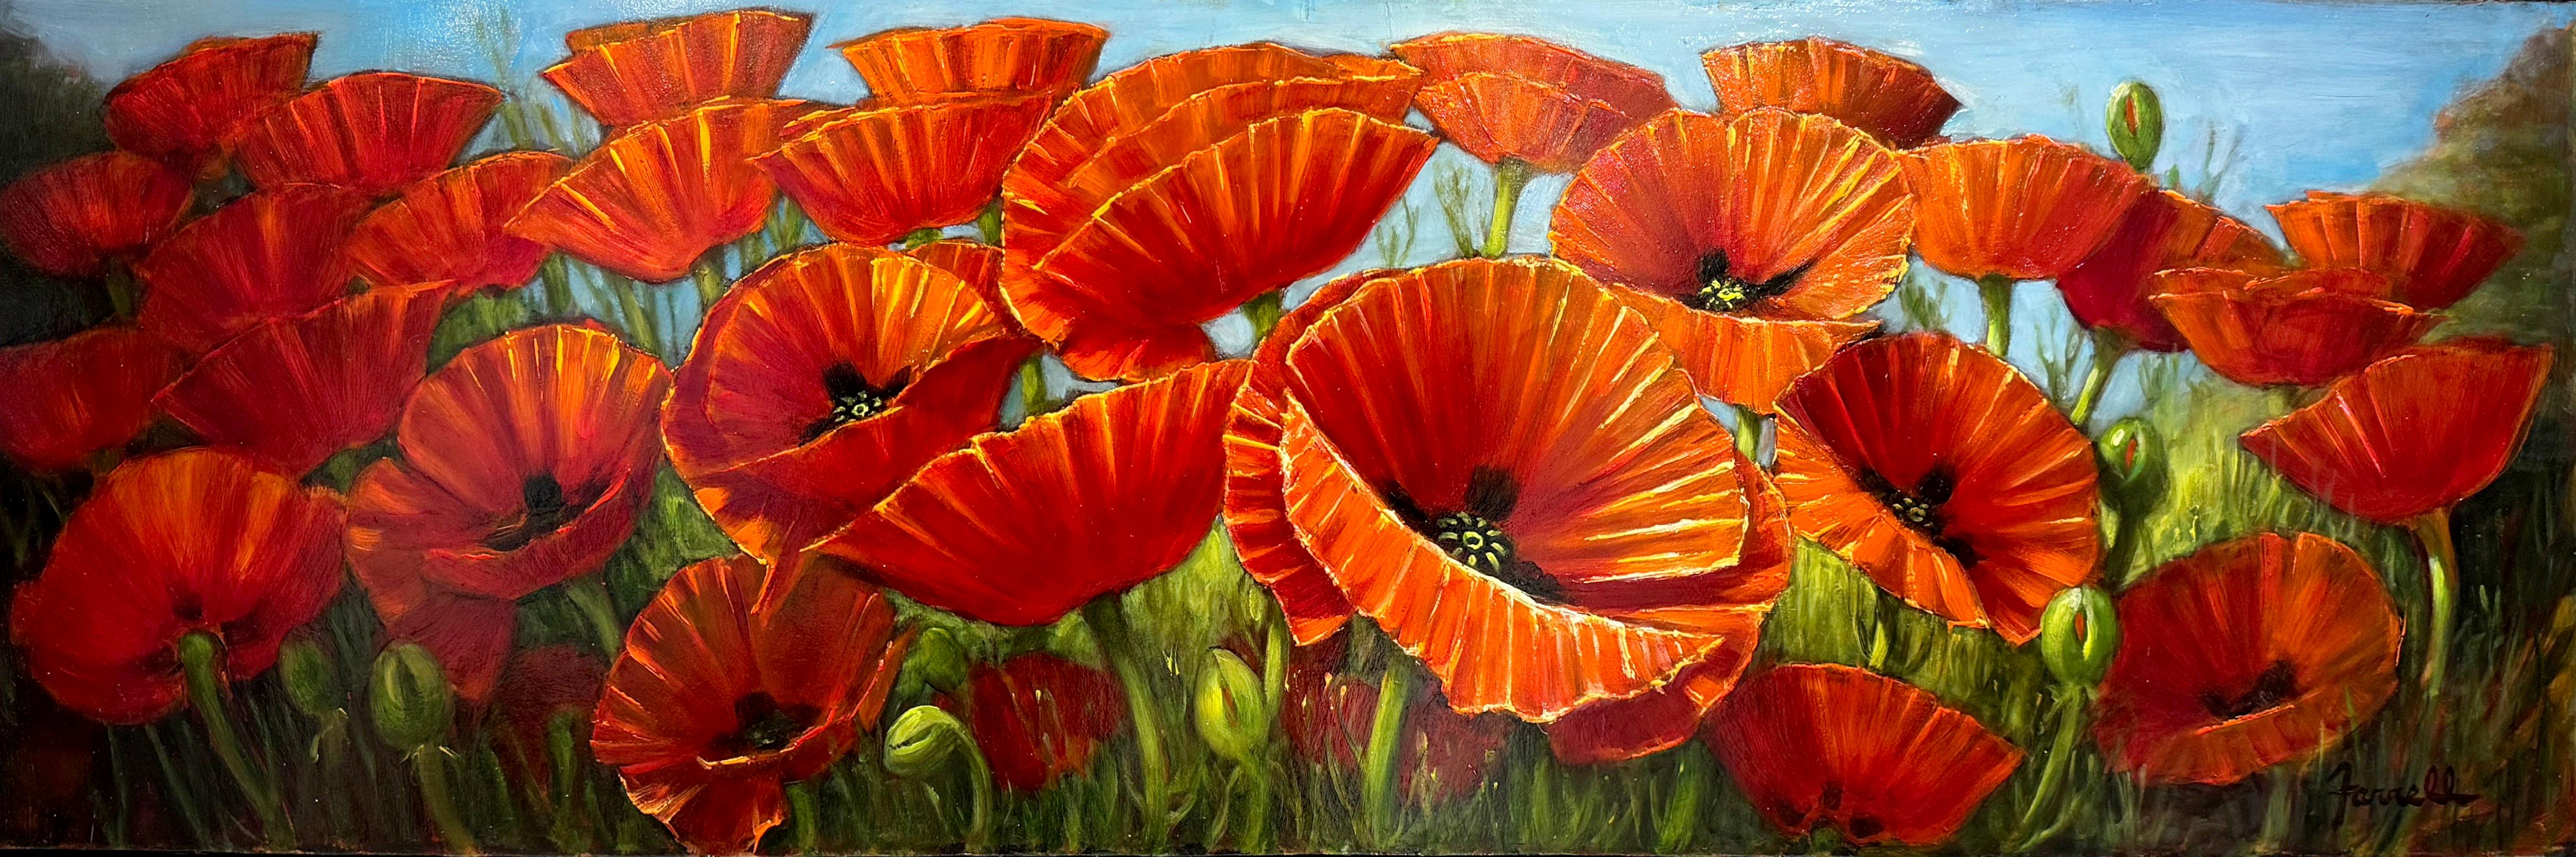 Sean Farrell, "Coquelicots rouges en Toscane", 12x36 Nature morte florale, peinture à l'huile